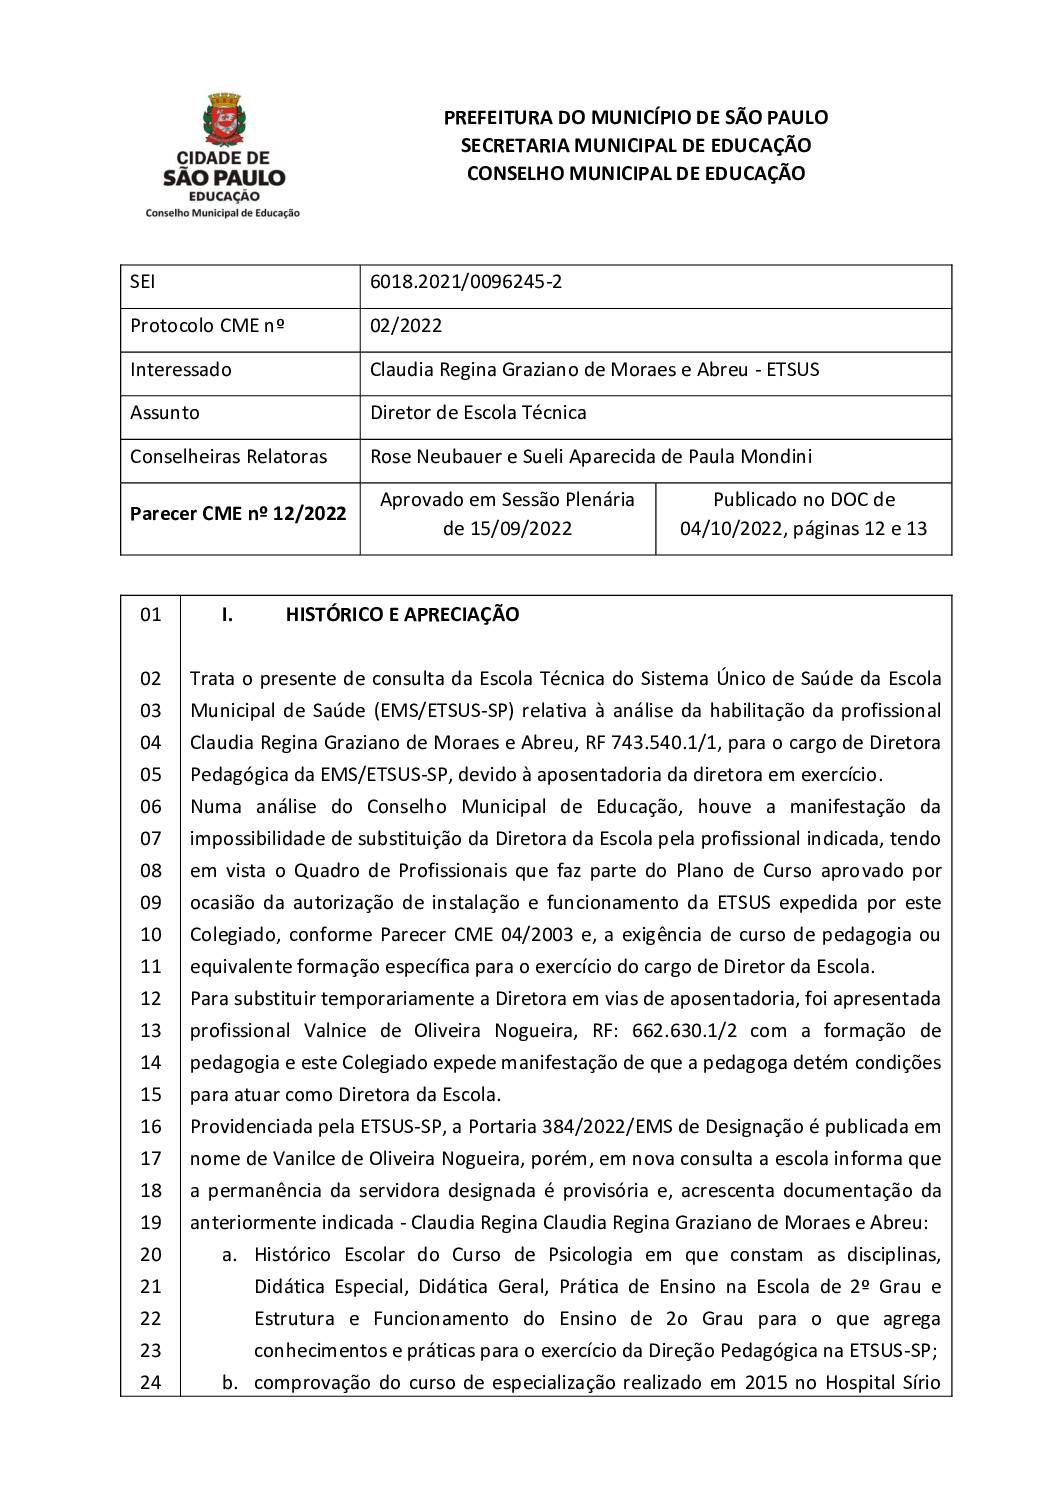 Parecer CME nº 12/2022 - Diretor de Escola Técnica - Claudia Regina Graziano de Moraes e Abreu - ETSUS 